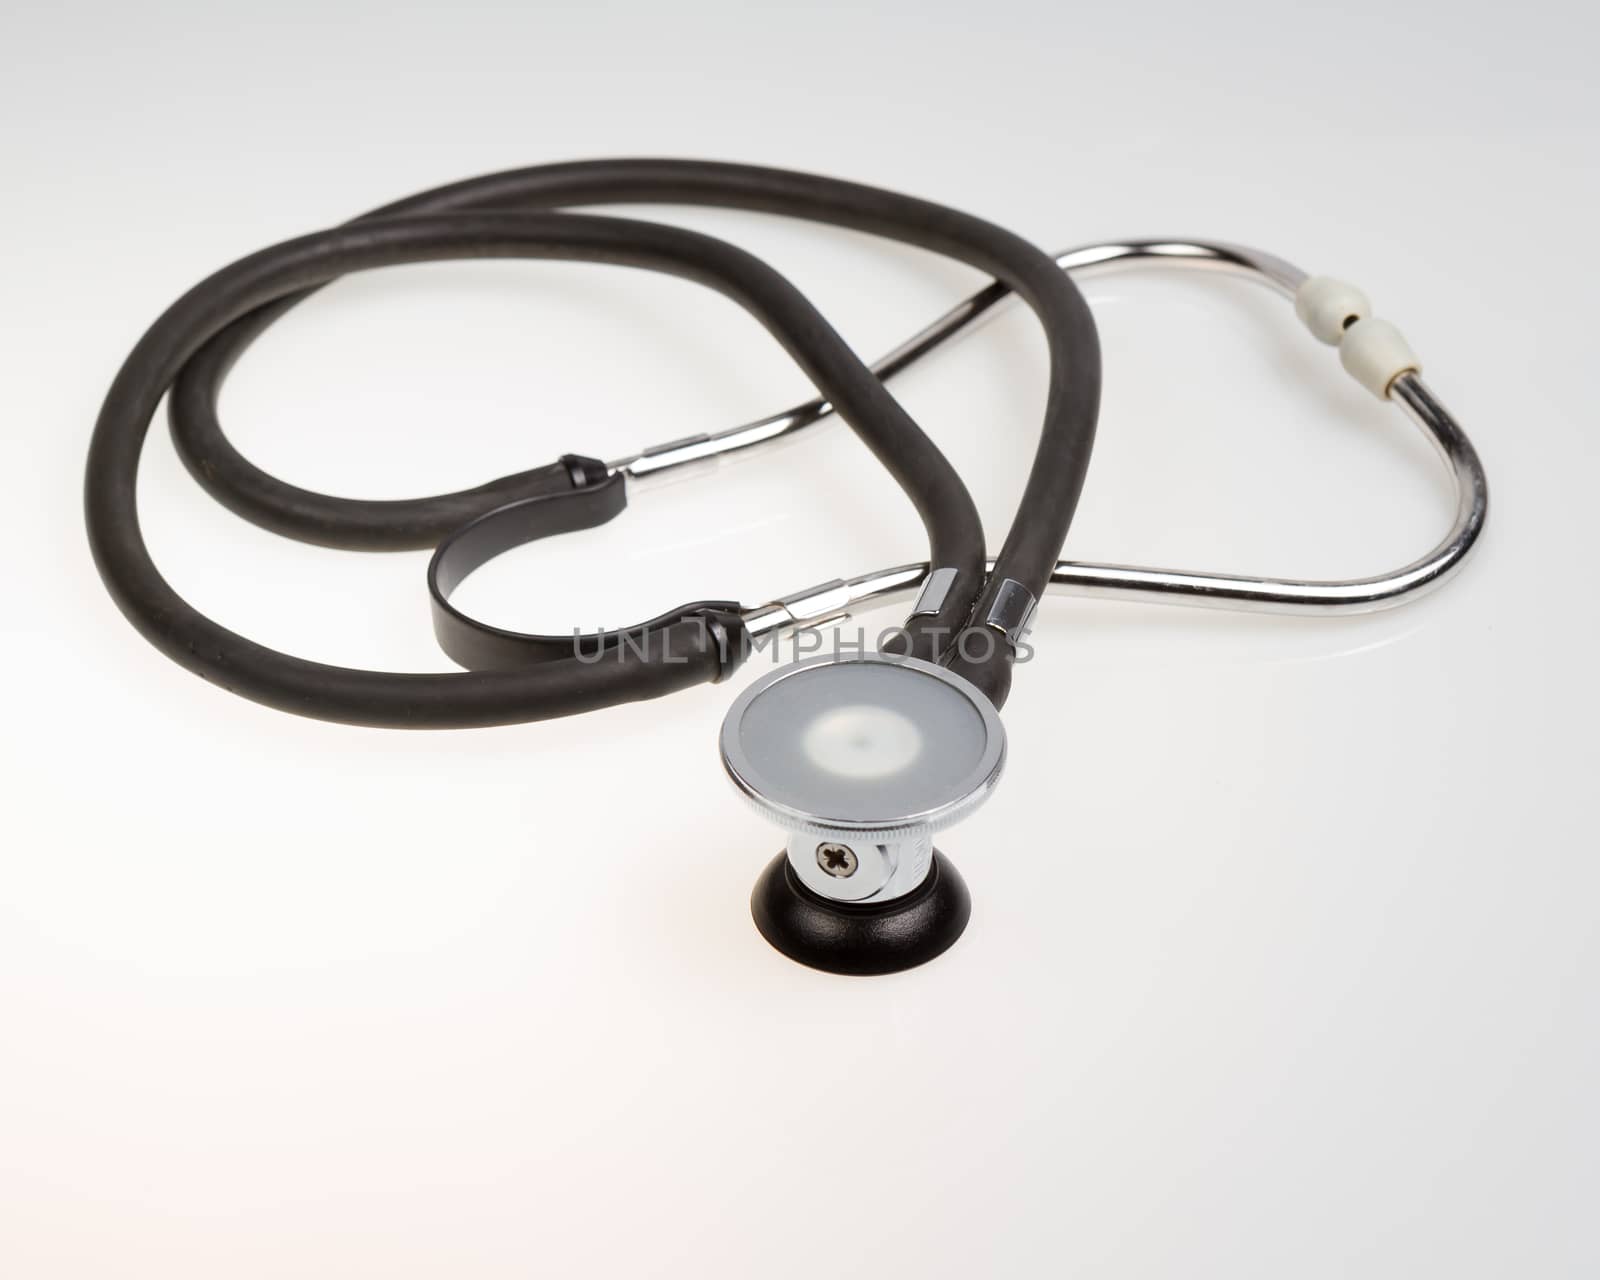 Stethoscope on isolated white background